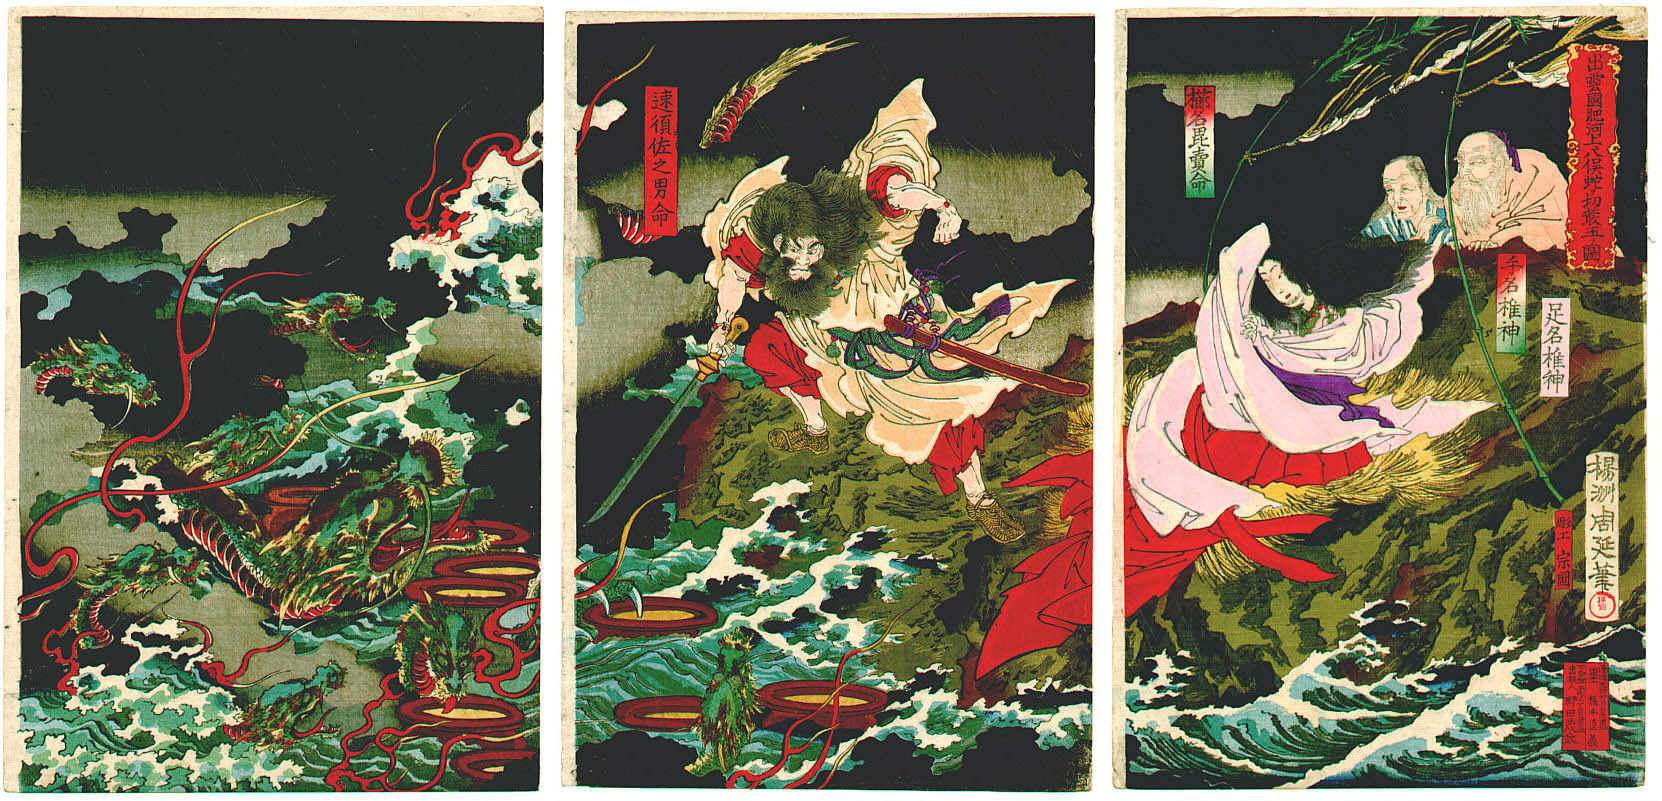 12 Major Japanese Gods and Goddesses